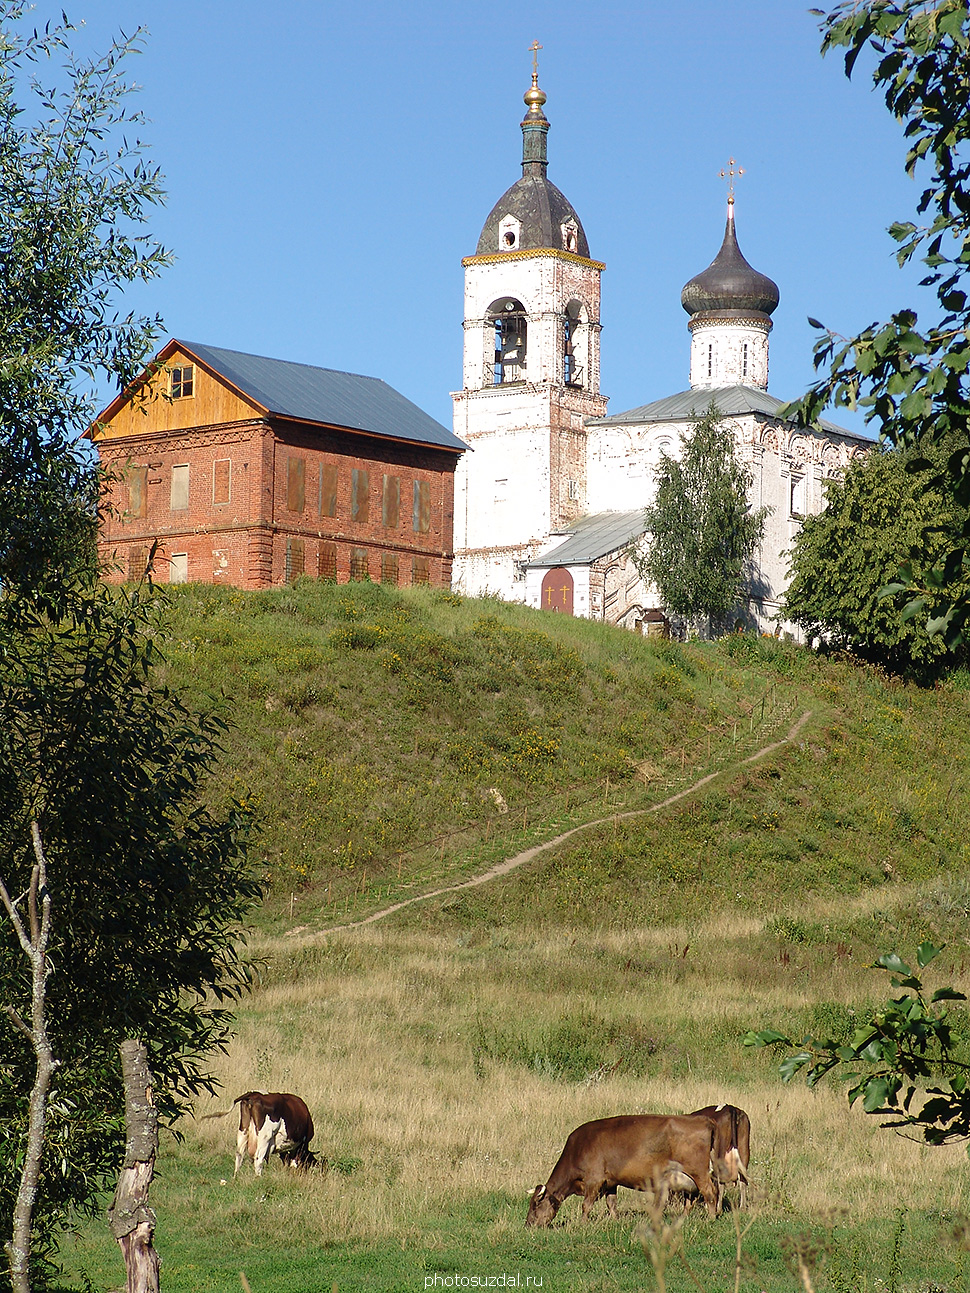 Благовещенская церковь с колокольней в селе Сновицы Суздальского района